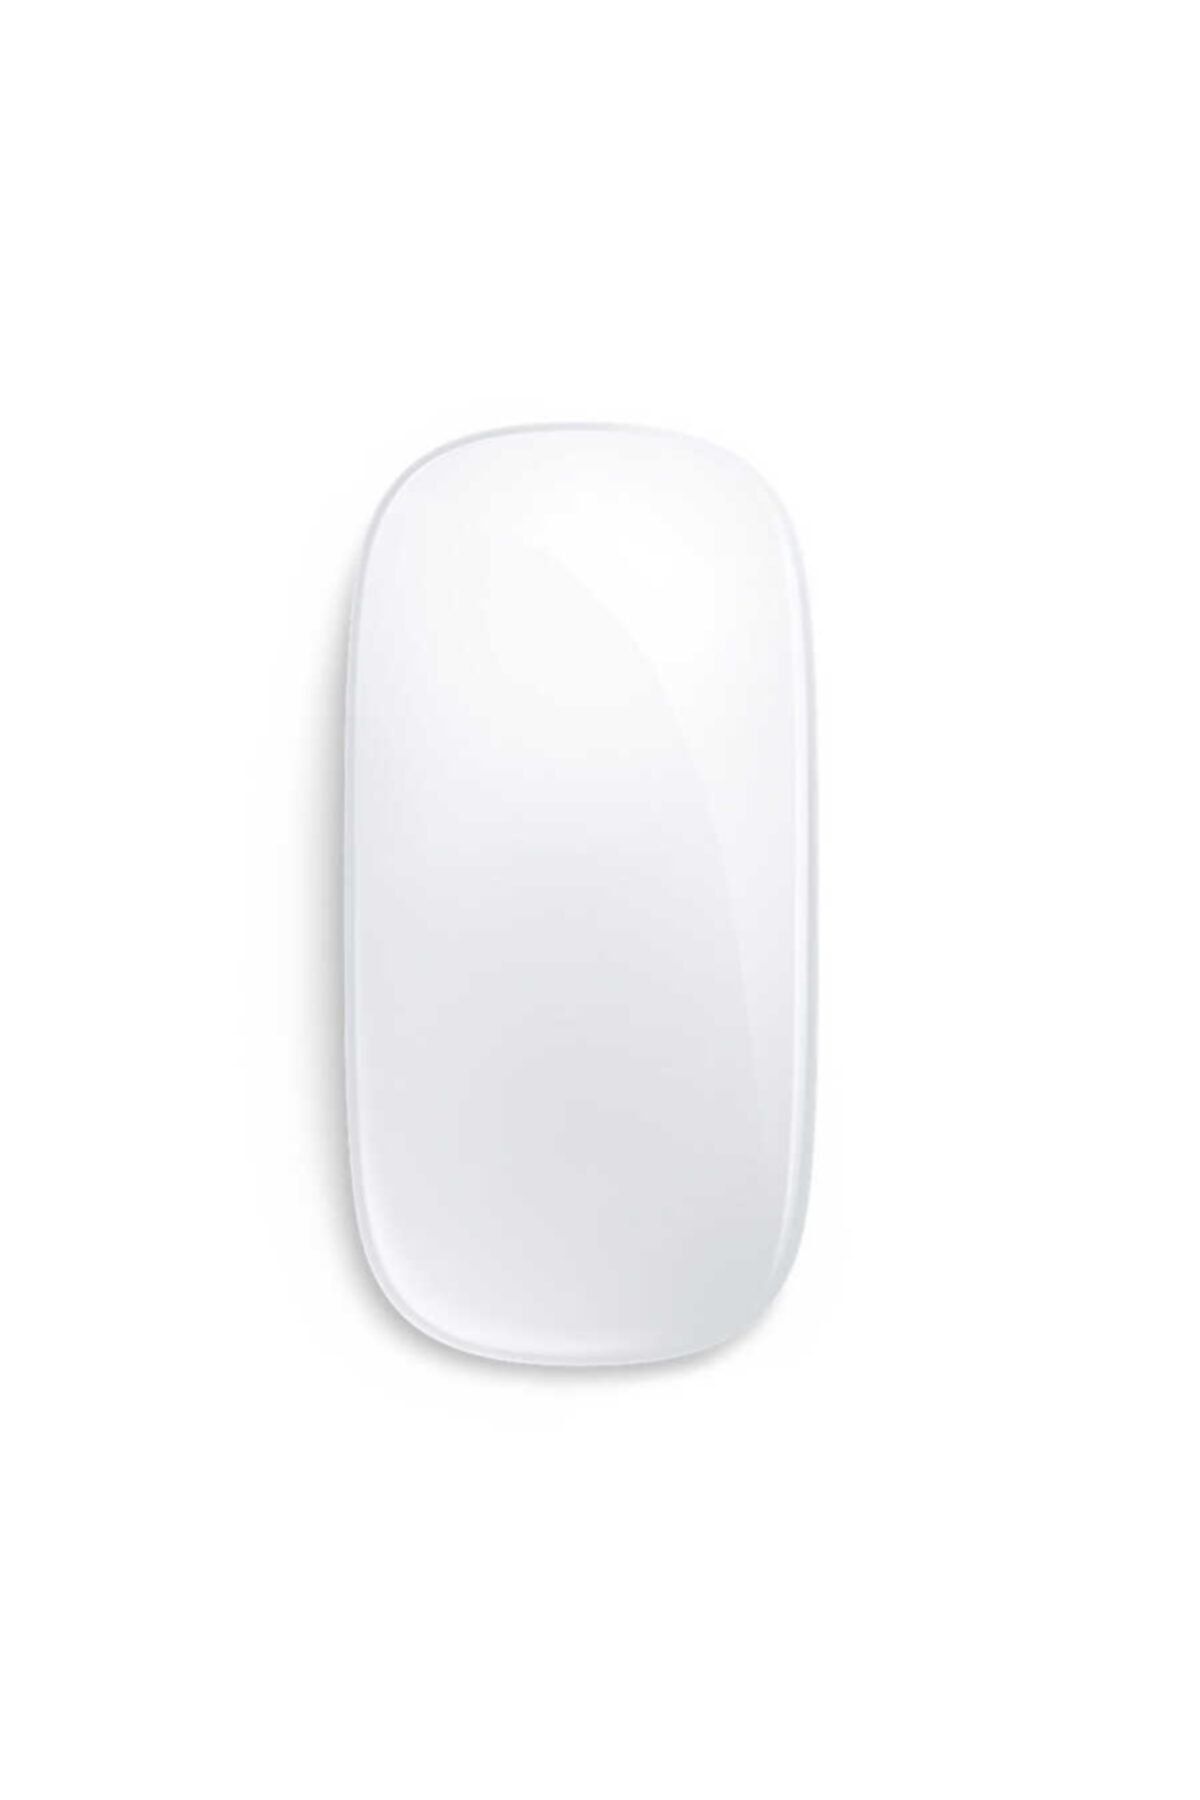 Cep prime Wireless 2.4 Mouse Fare Macbook Pro (retina, 15 Inç, 2015) Uyumlu Lisanslı Kablousuz Bağlantı